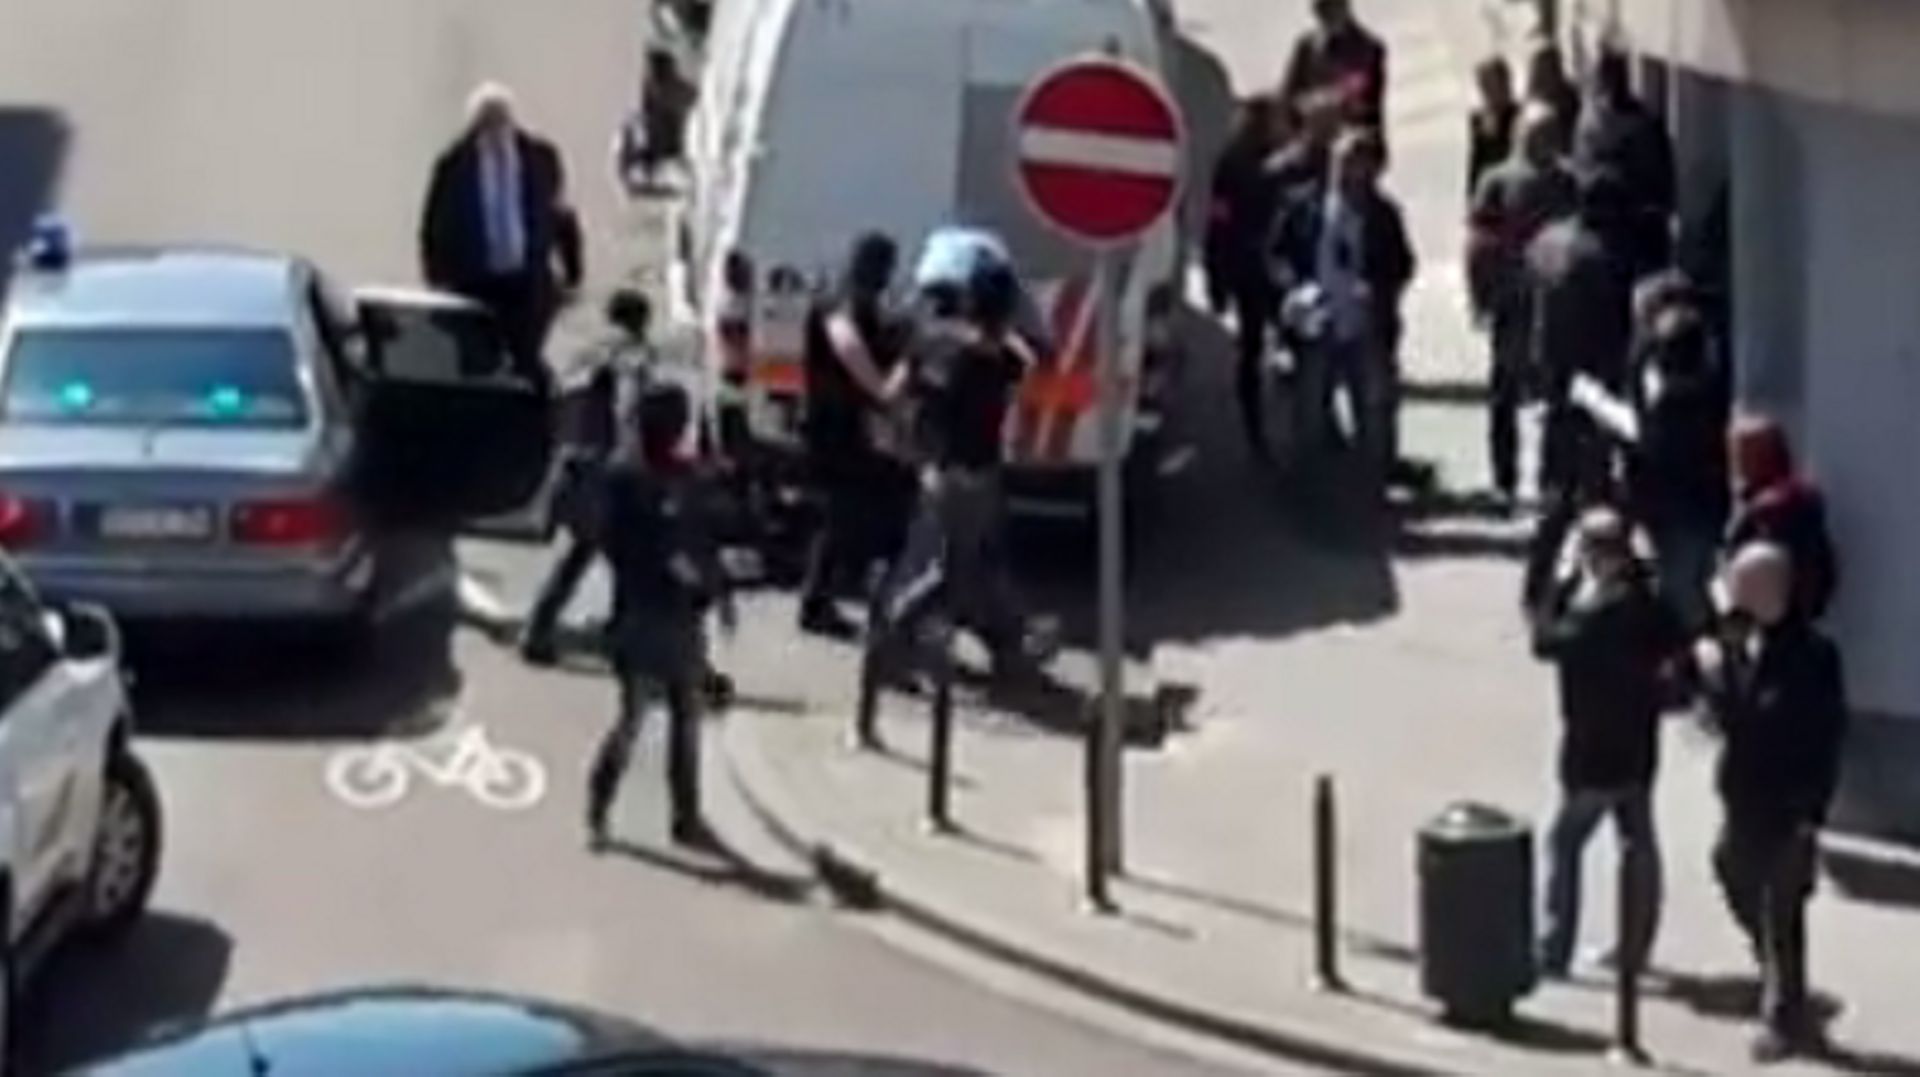 Attentats de Bruxelles: reconstitution à Schaerbeek en présence de Mohamed Abrini (vidéo)